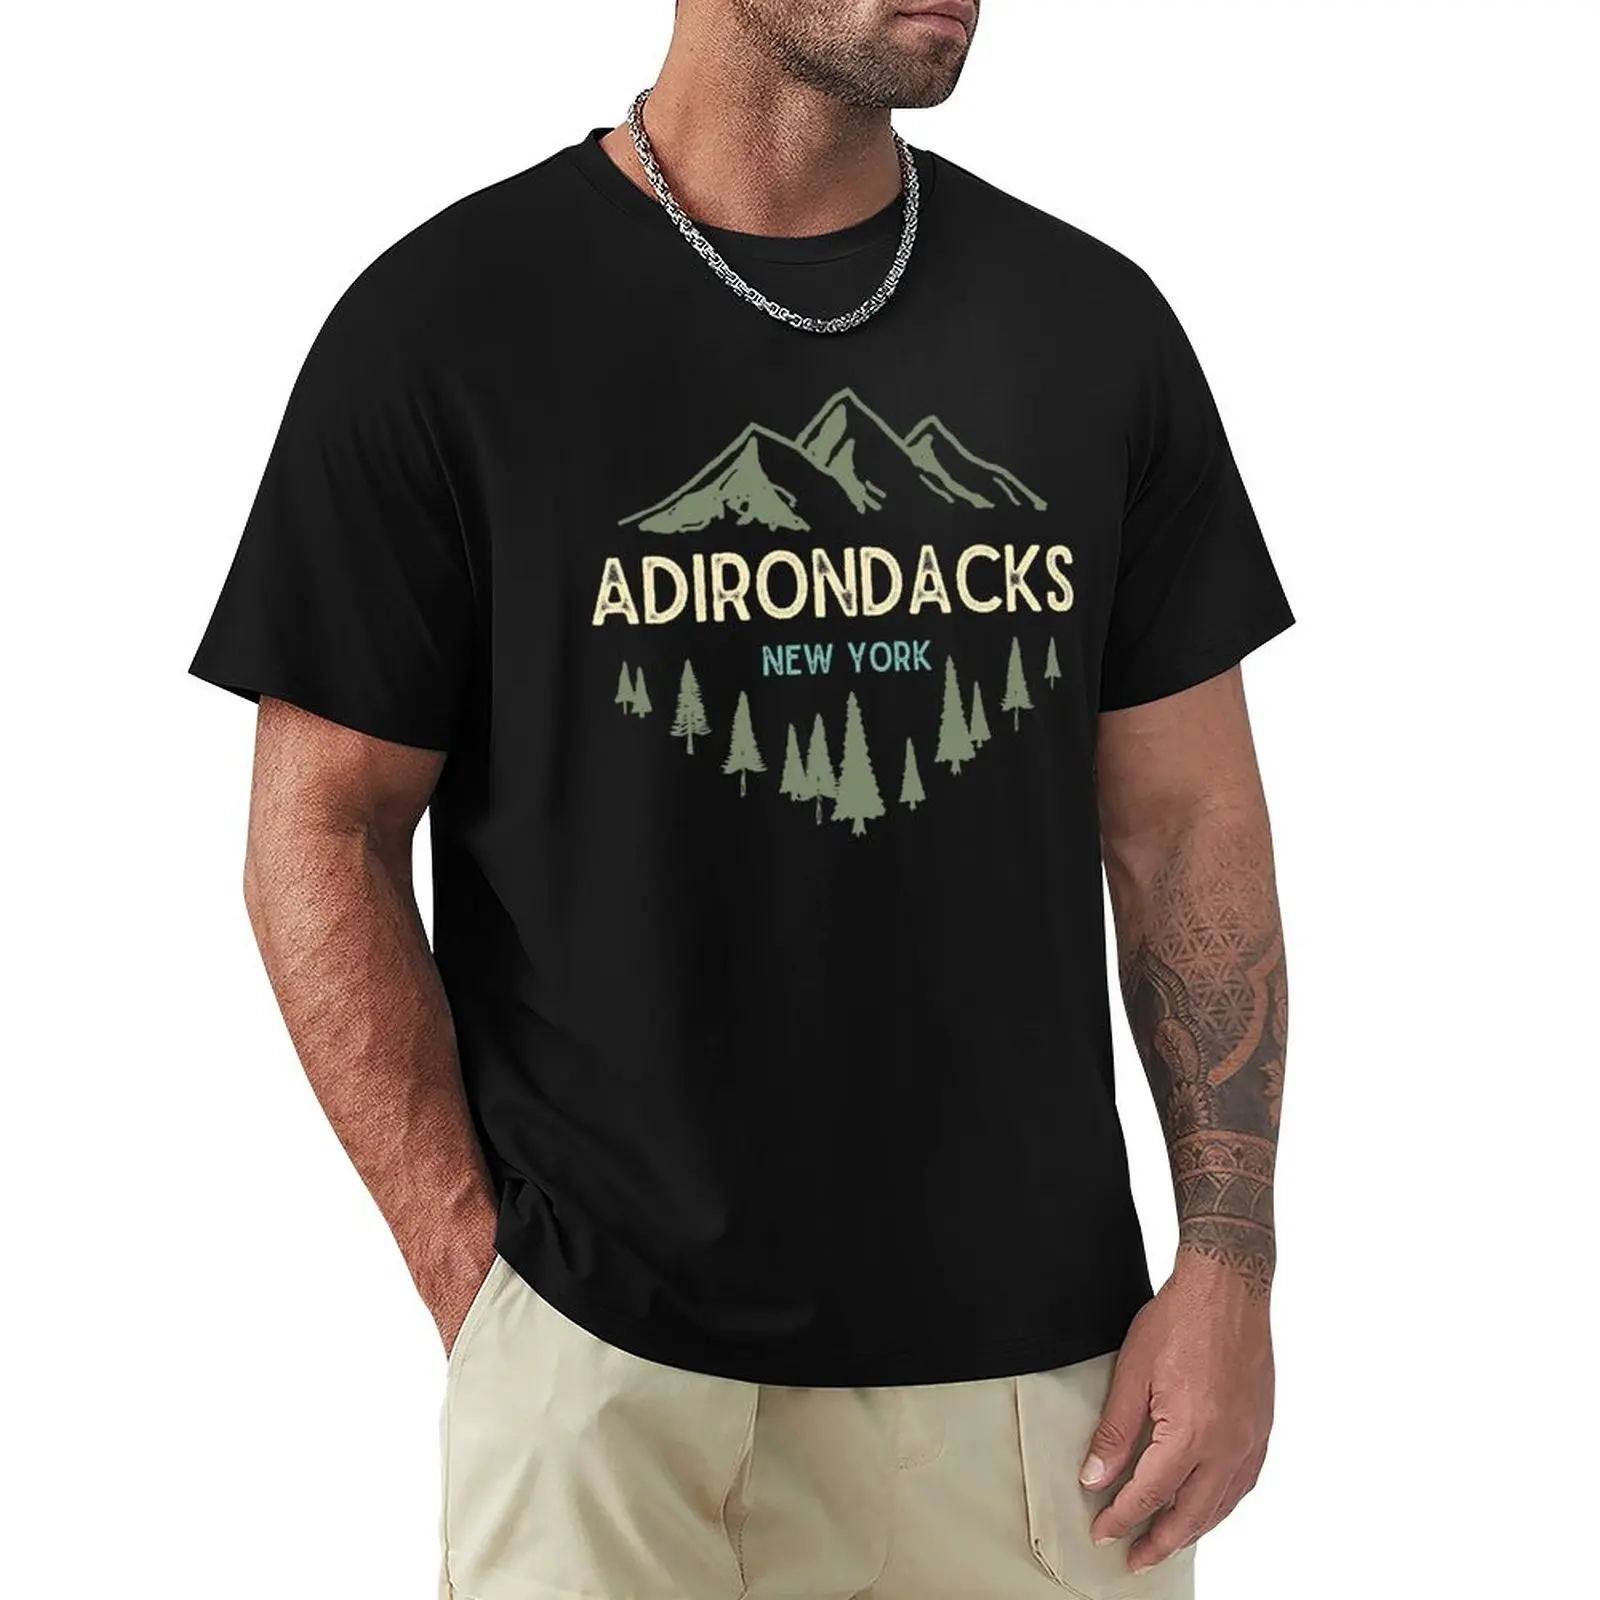 

Винтажная Ретро футболка Adirondack с изображением гор адирондаков, Нью-Йорк, индивидуальные футболки, черные футболки для мужчин